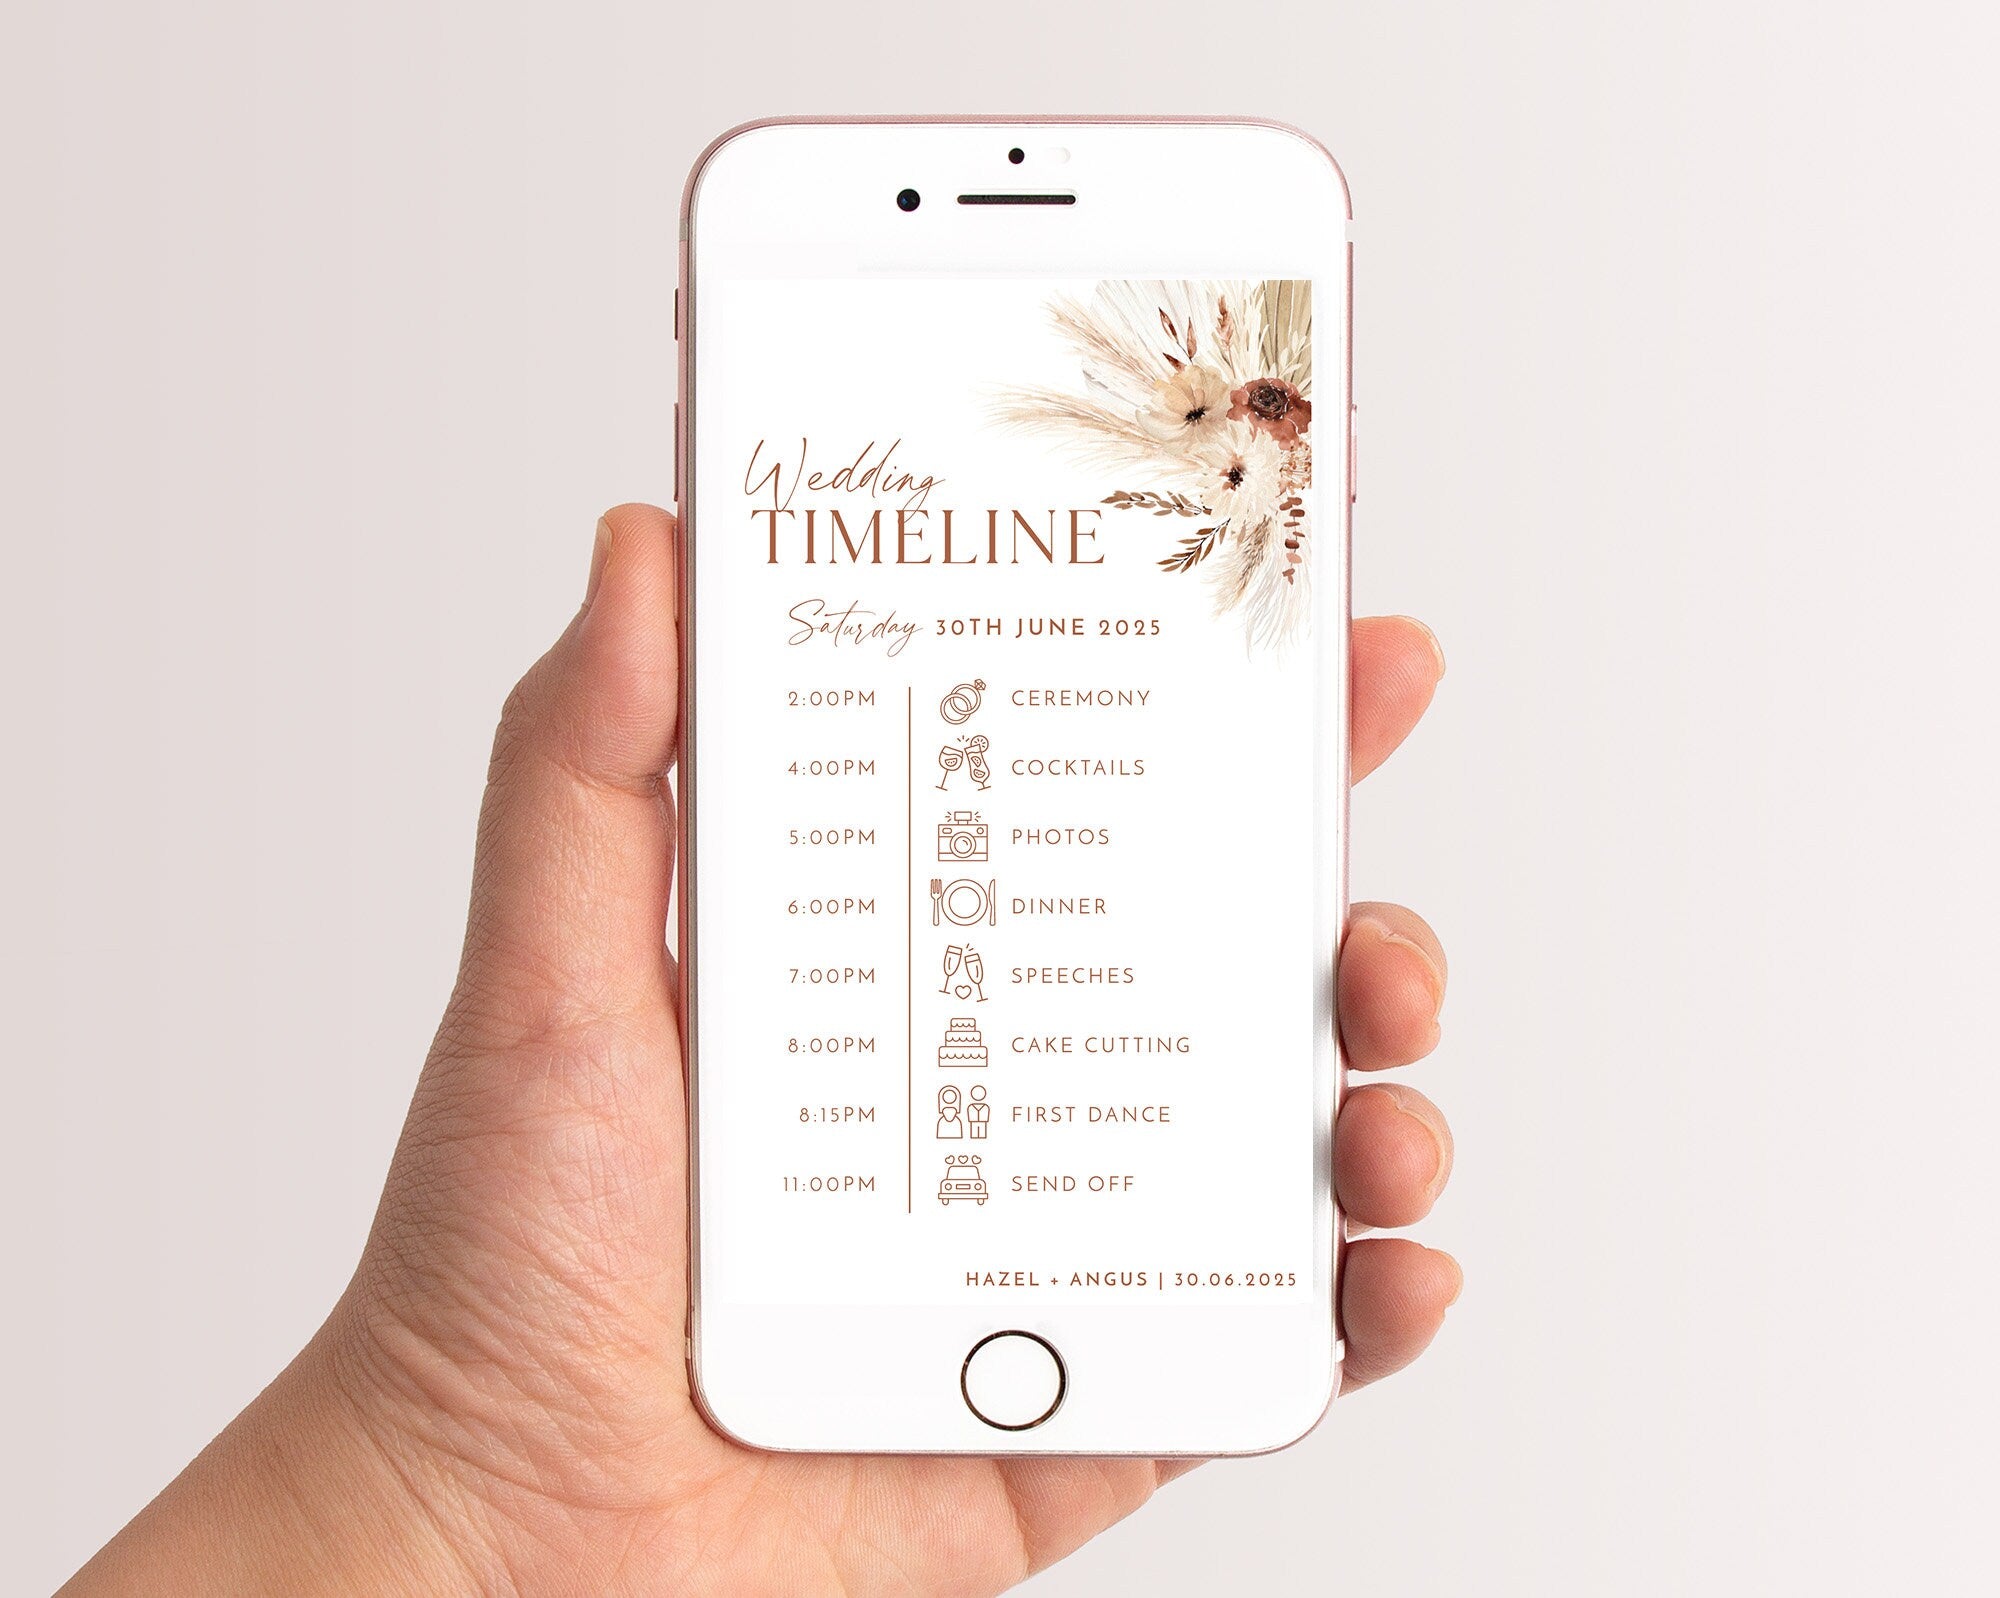 Phone Timeline Template, Wedding Timeline, Order of Events For Texting, Digital Wedding Day Timeline Download, Boho Floral Wedding, Hazel